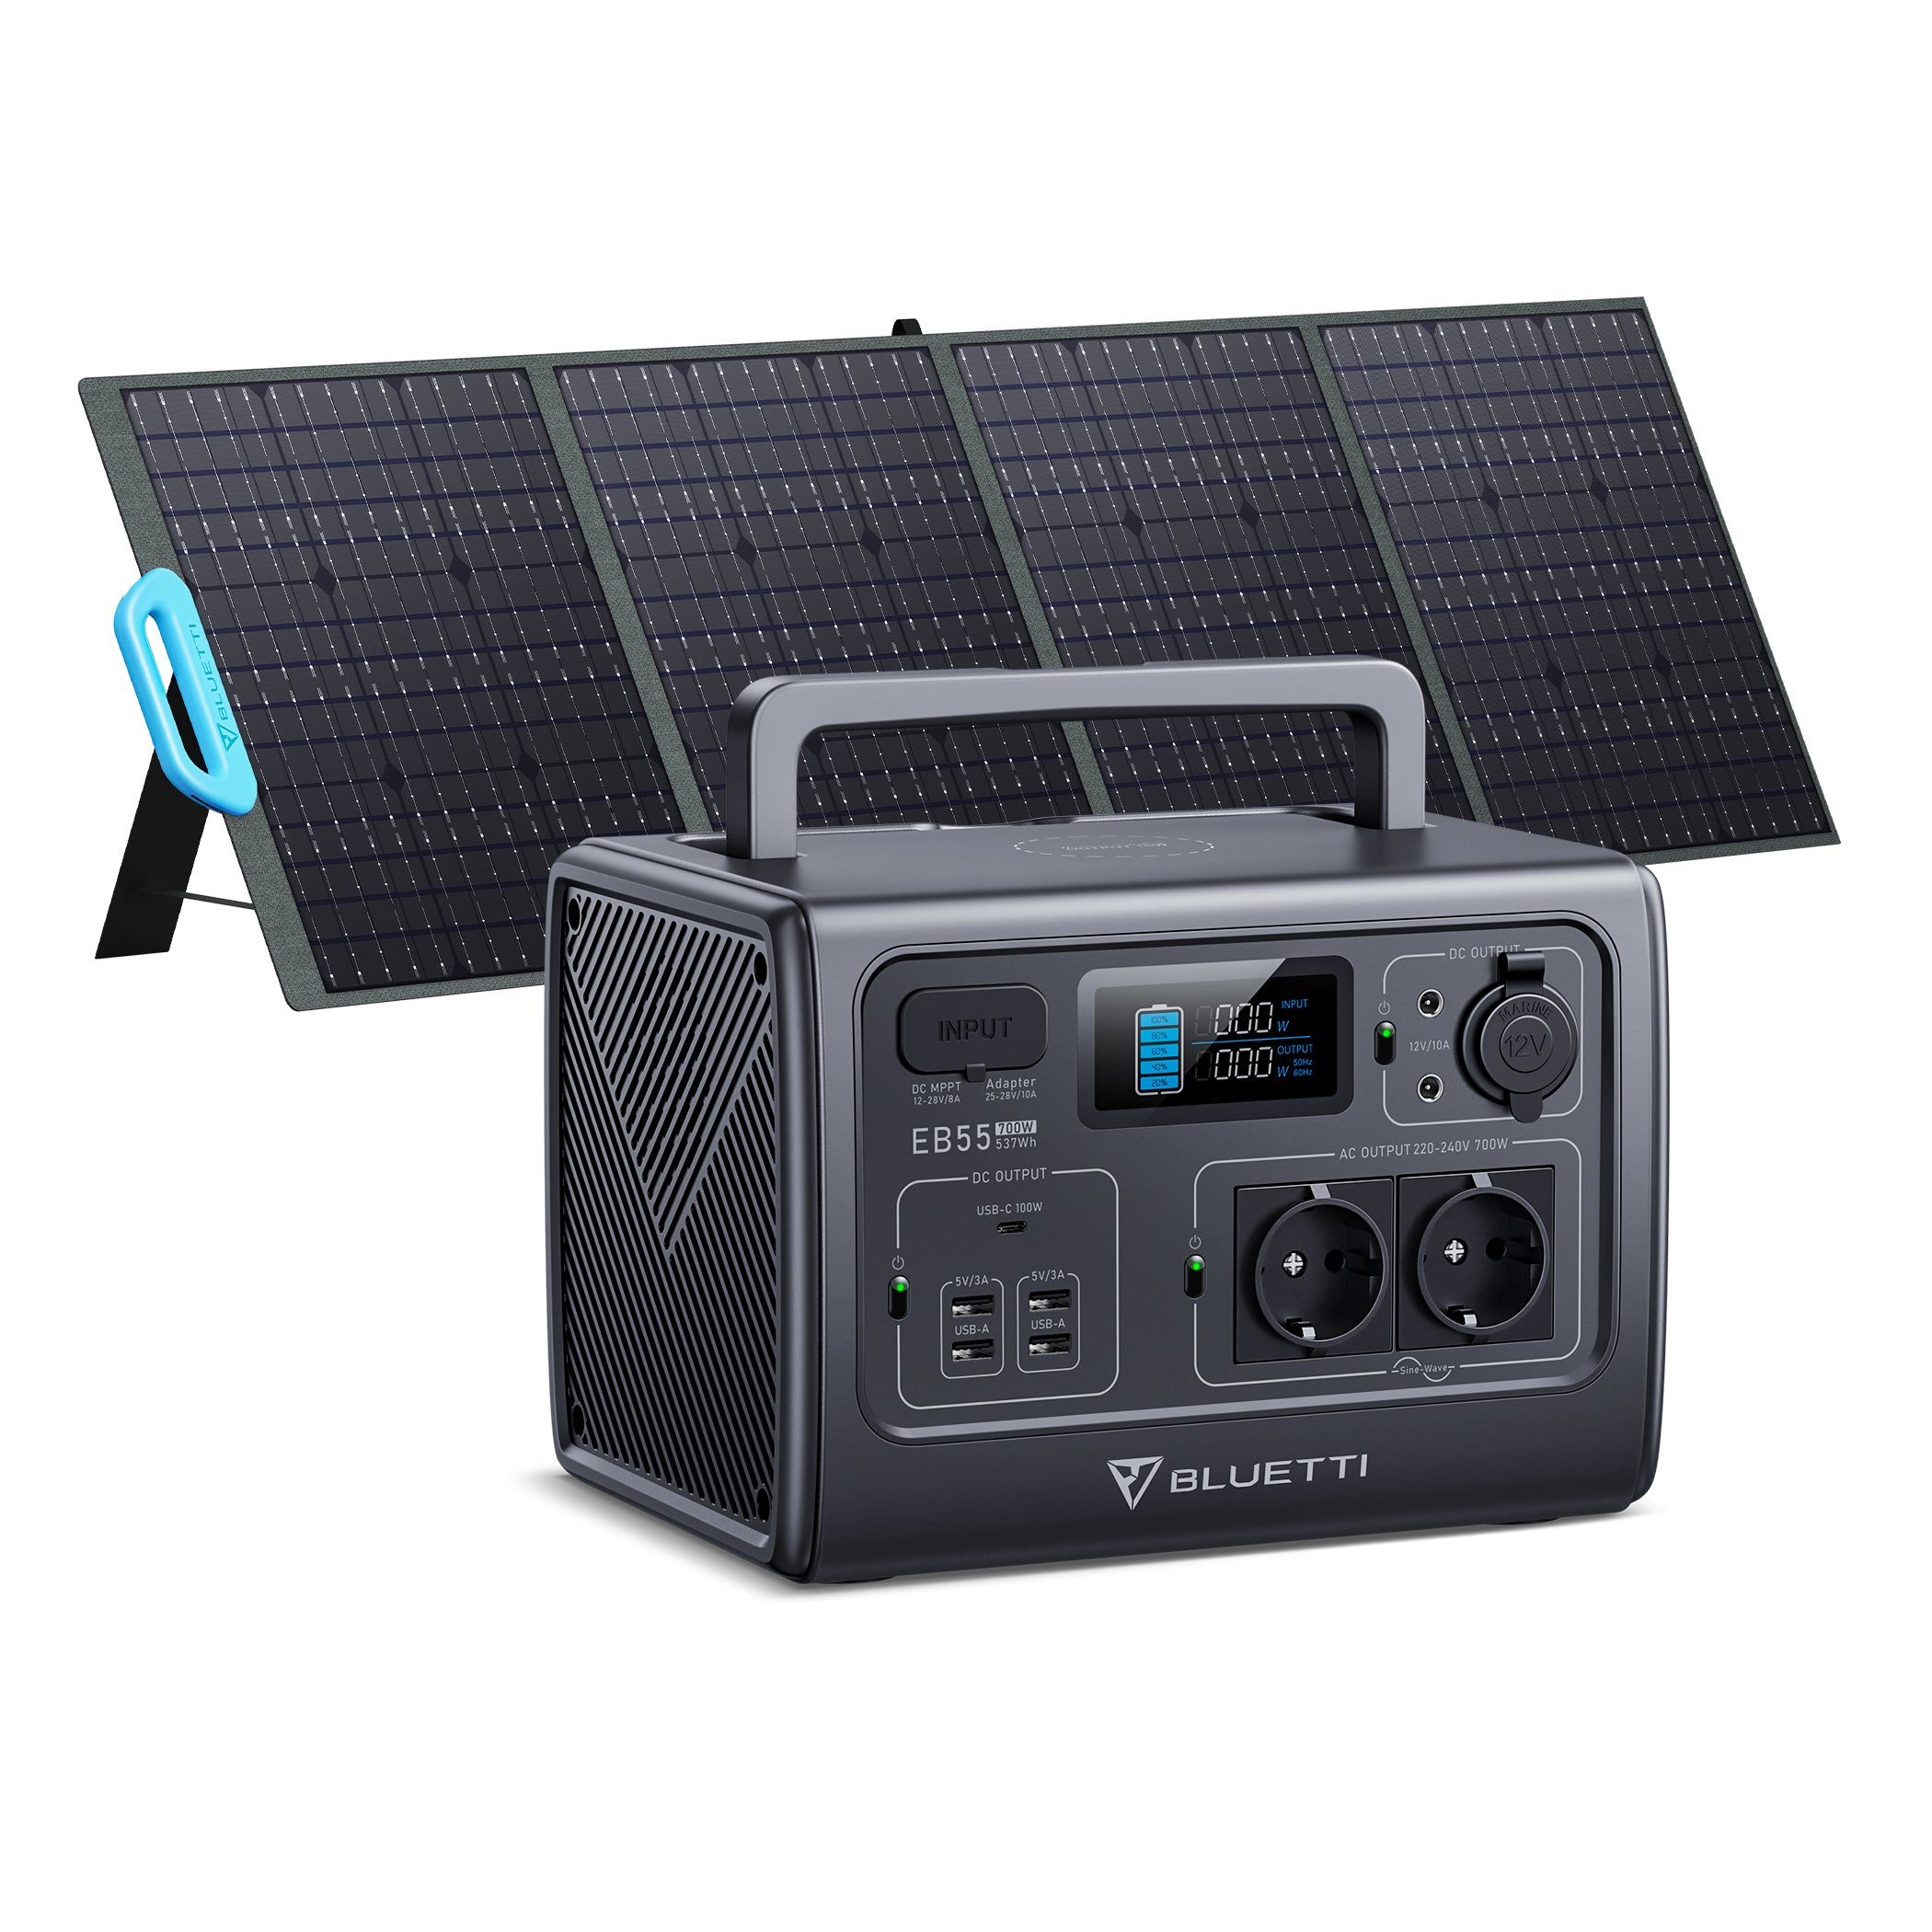 Groupe électrogène solaire + panneau solaire 200 W EB55+PV200